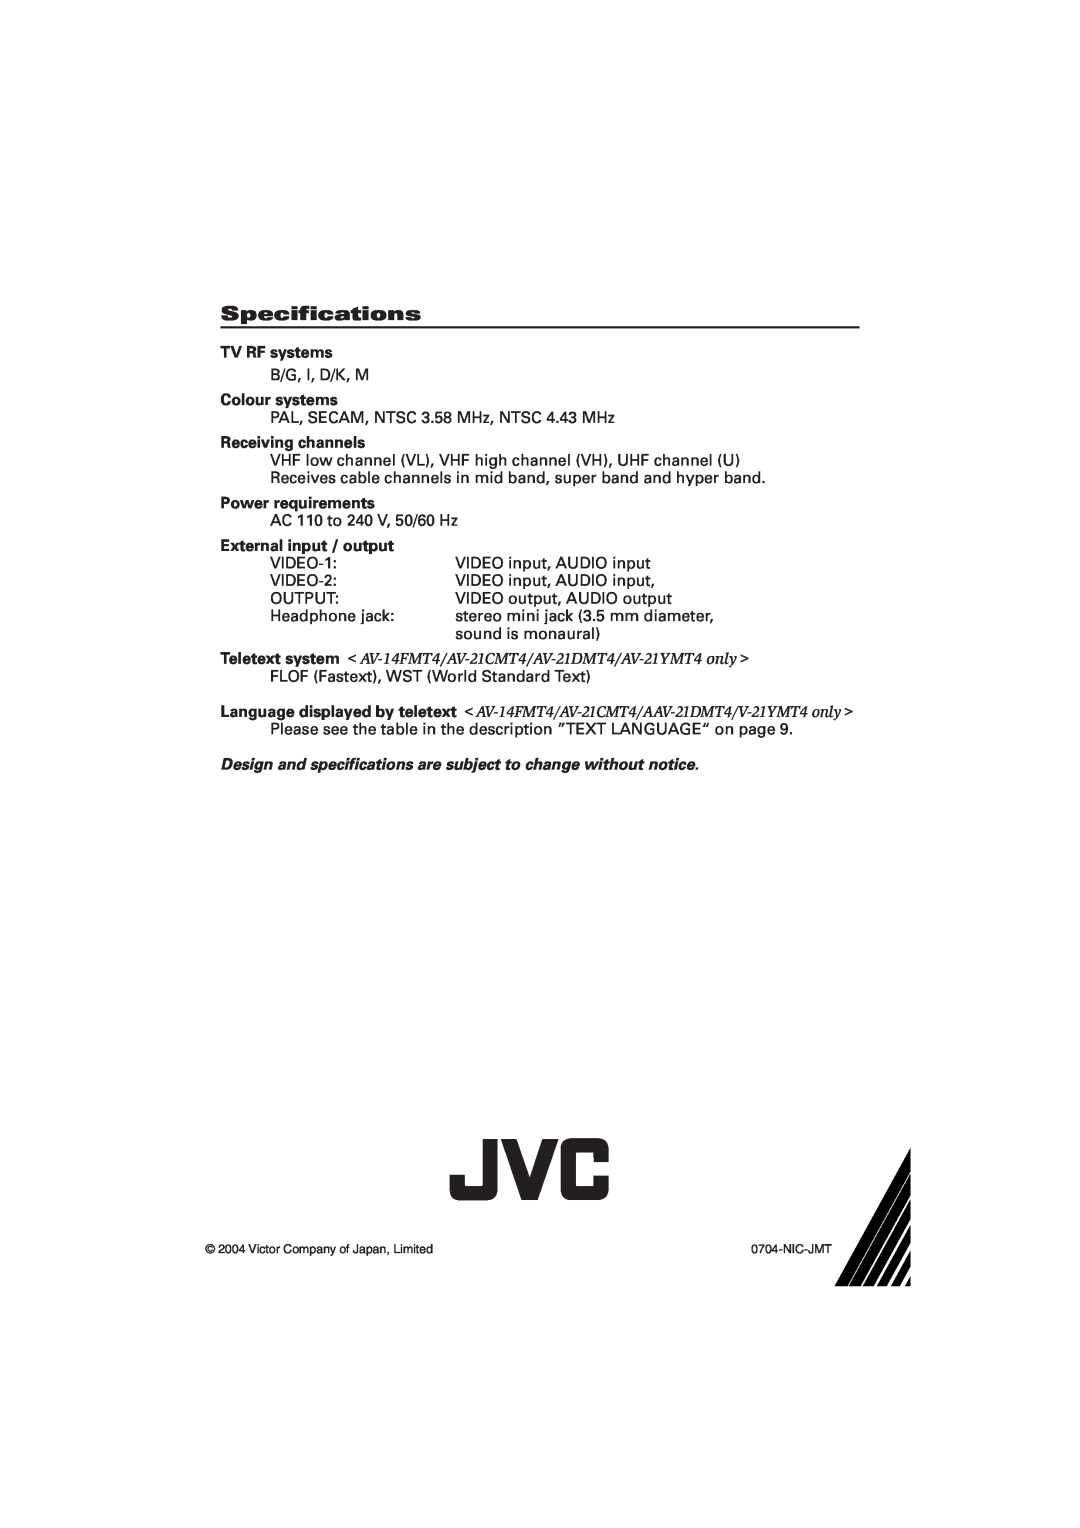 JVC AV-21YMT4, AV-21DMT4, AV-21FMG4B Specifications, TV RF systems, Colour systems, Receiving channels, Power requirements 